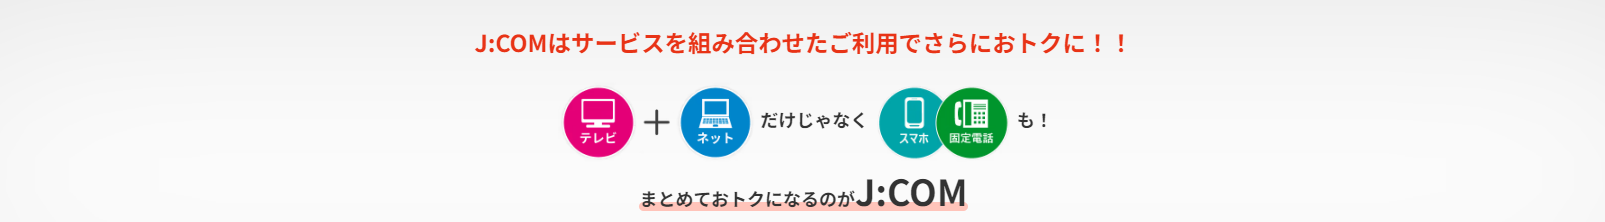 Jcomはサービスの組み合わせでさらにお得に